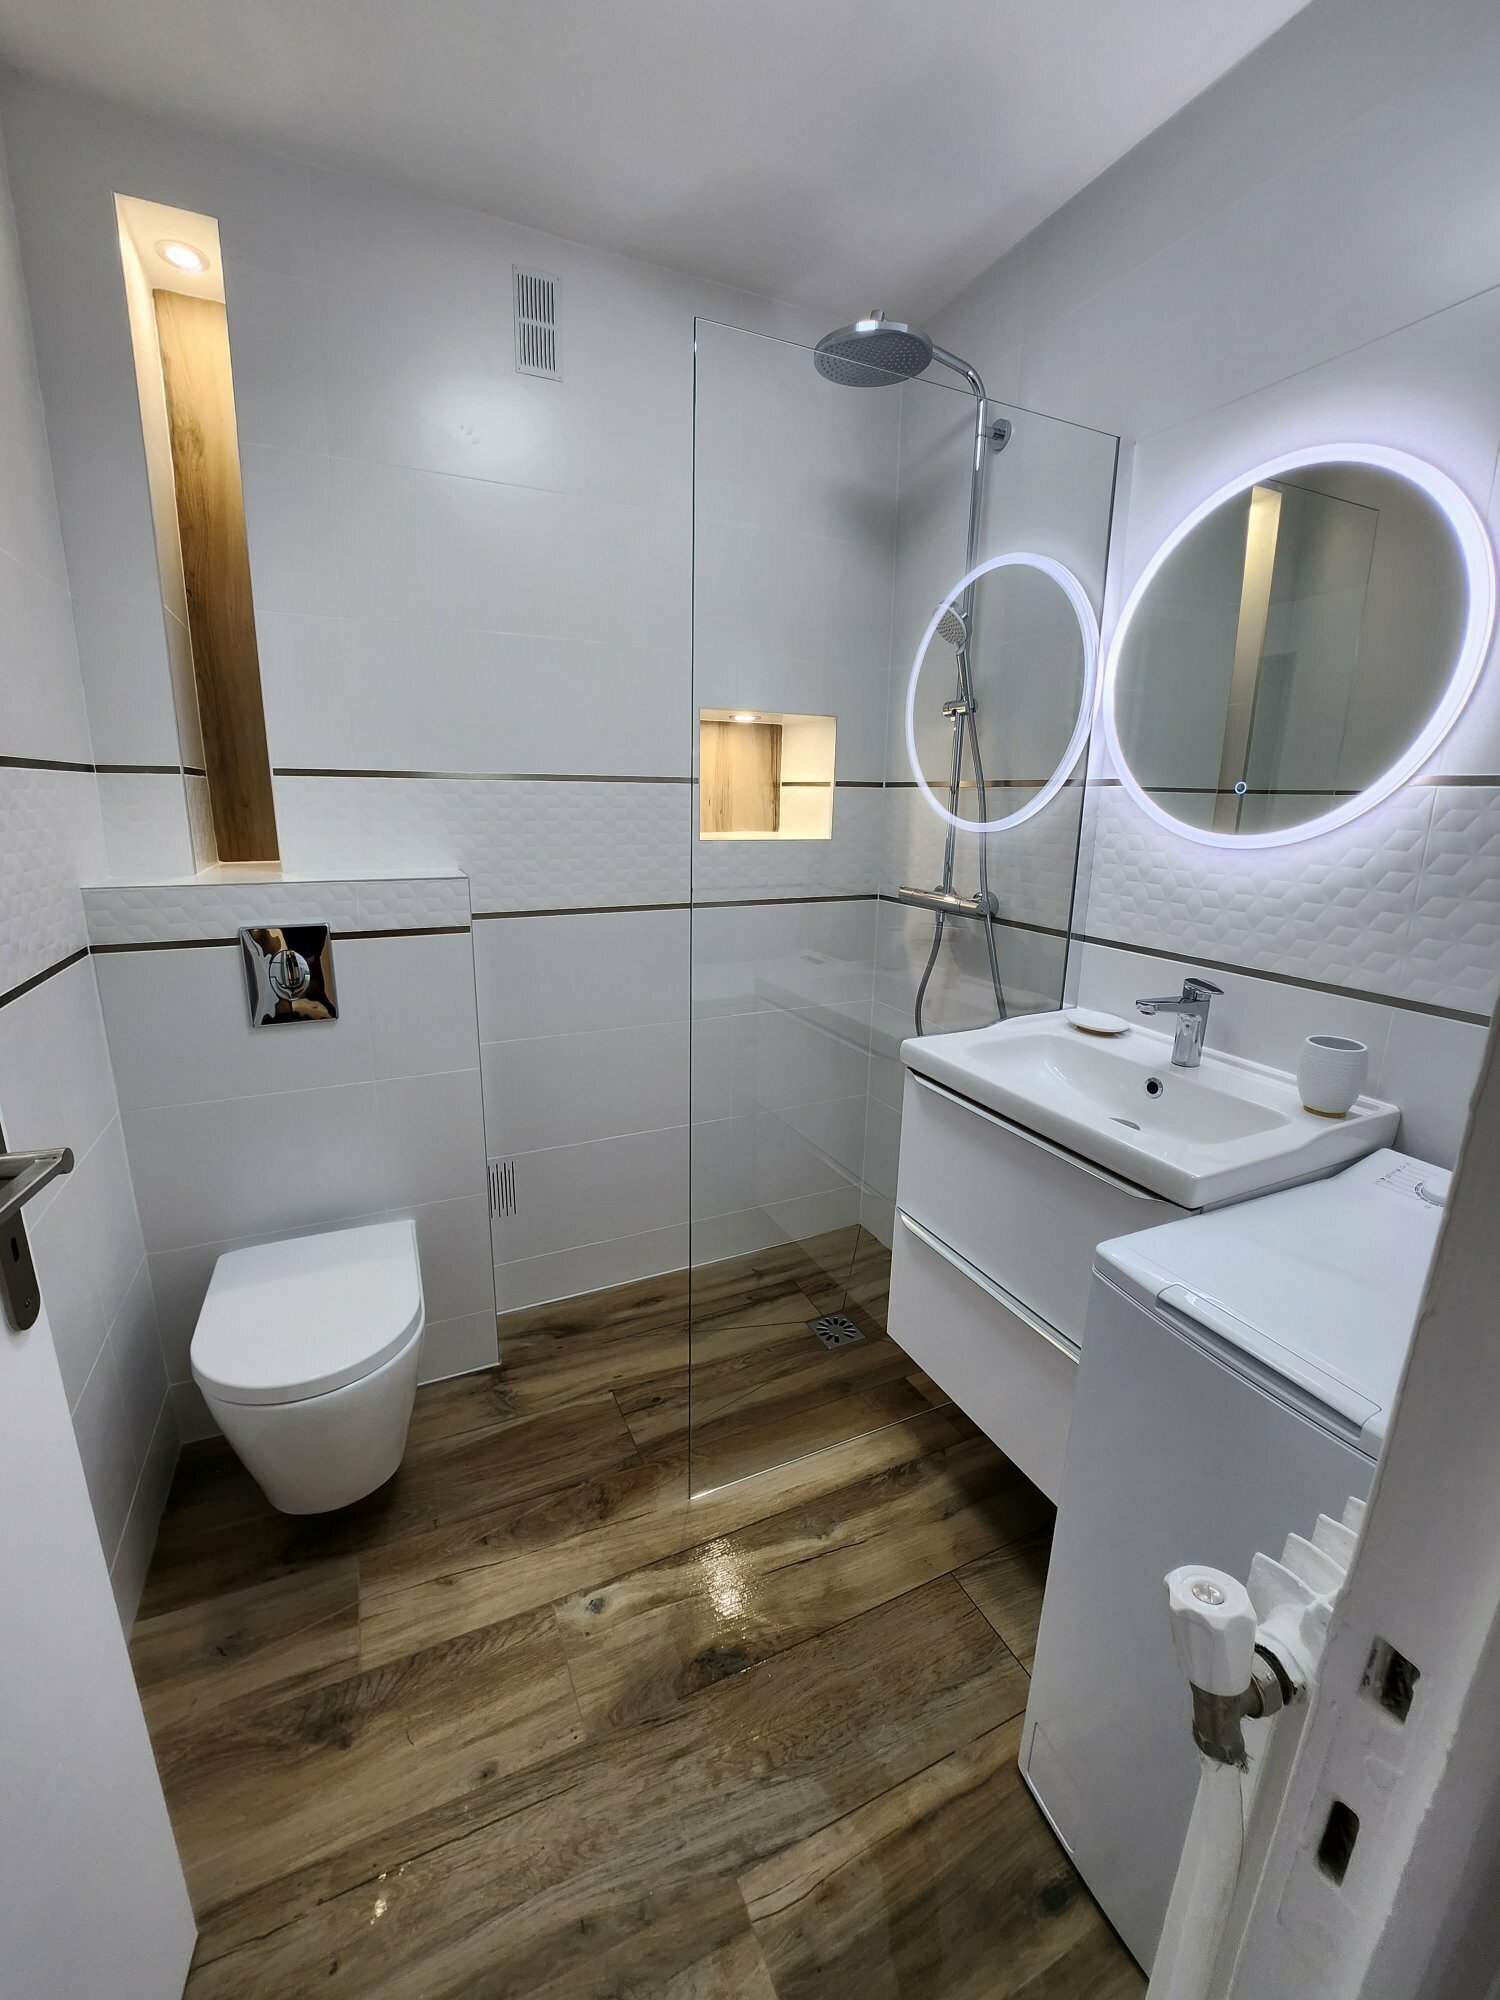 Installer une nouvelle salle de bains : planification et